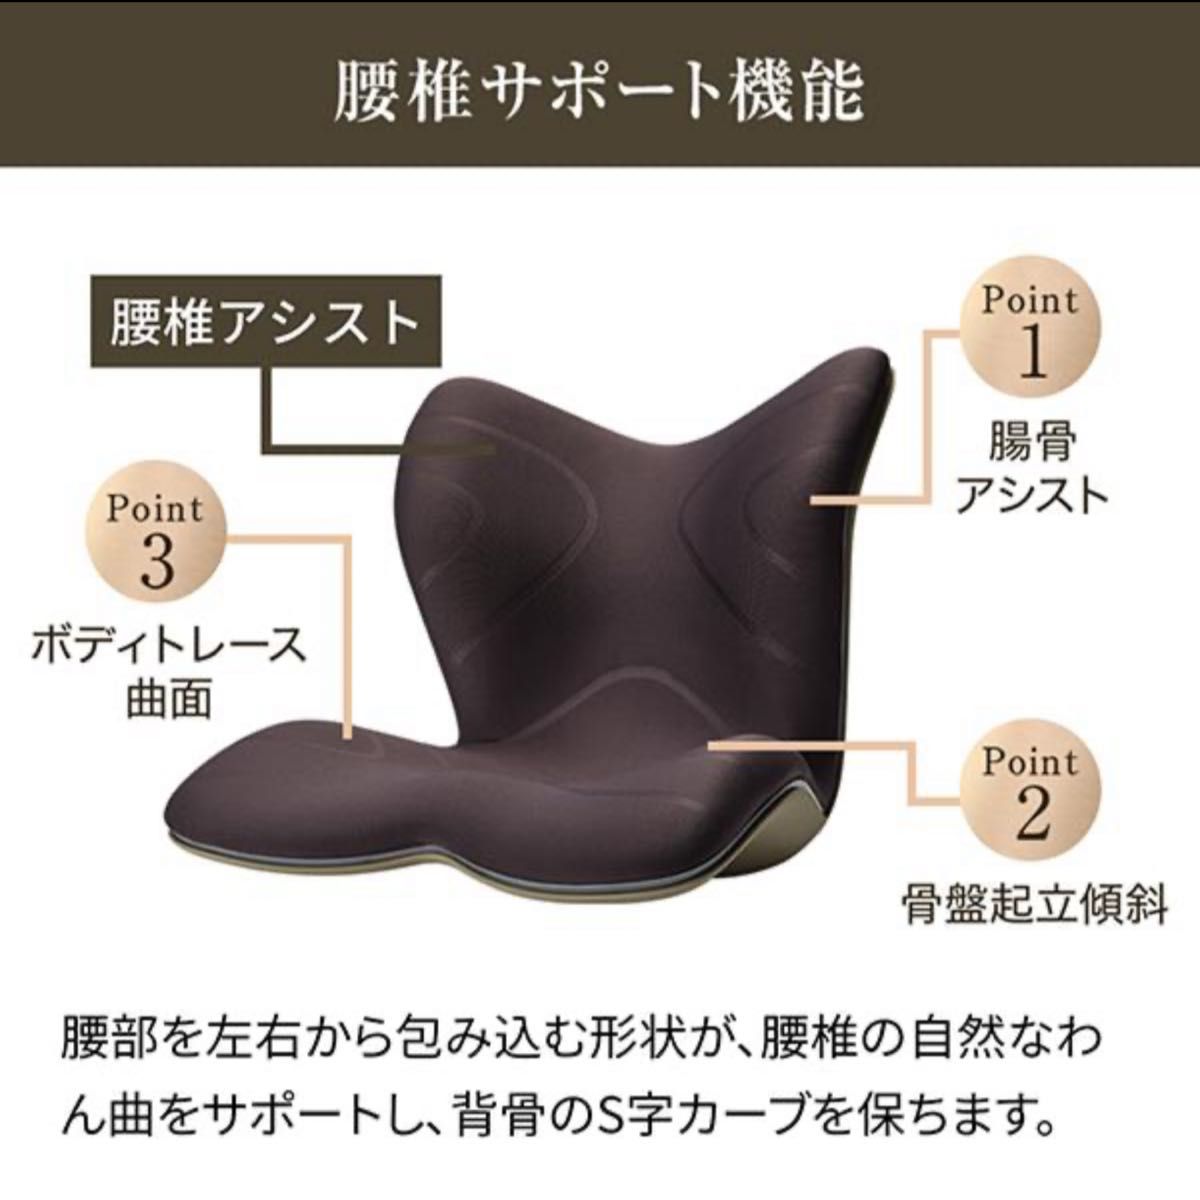 MTG StylePREMIUM(スタイルプレミアム)座椅子 チェア